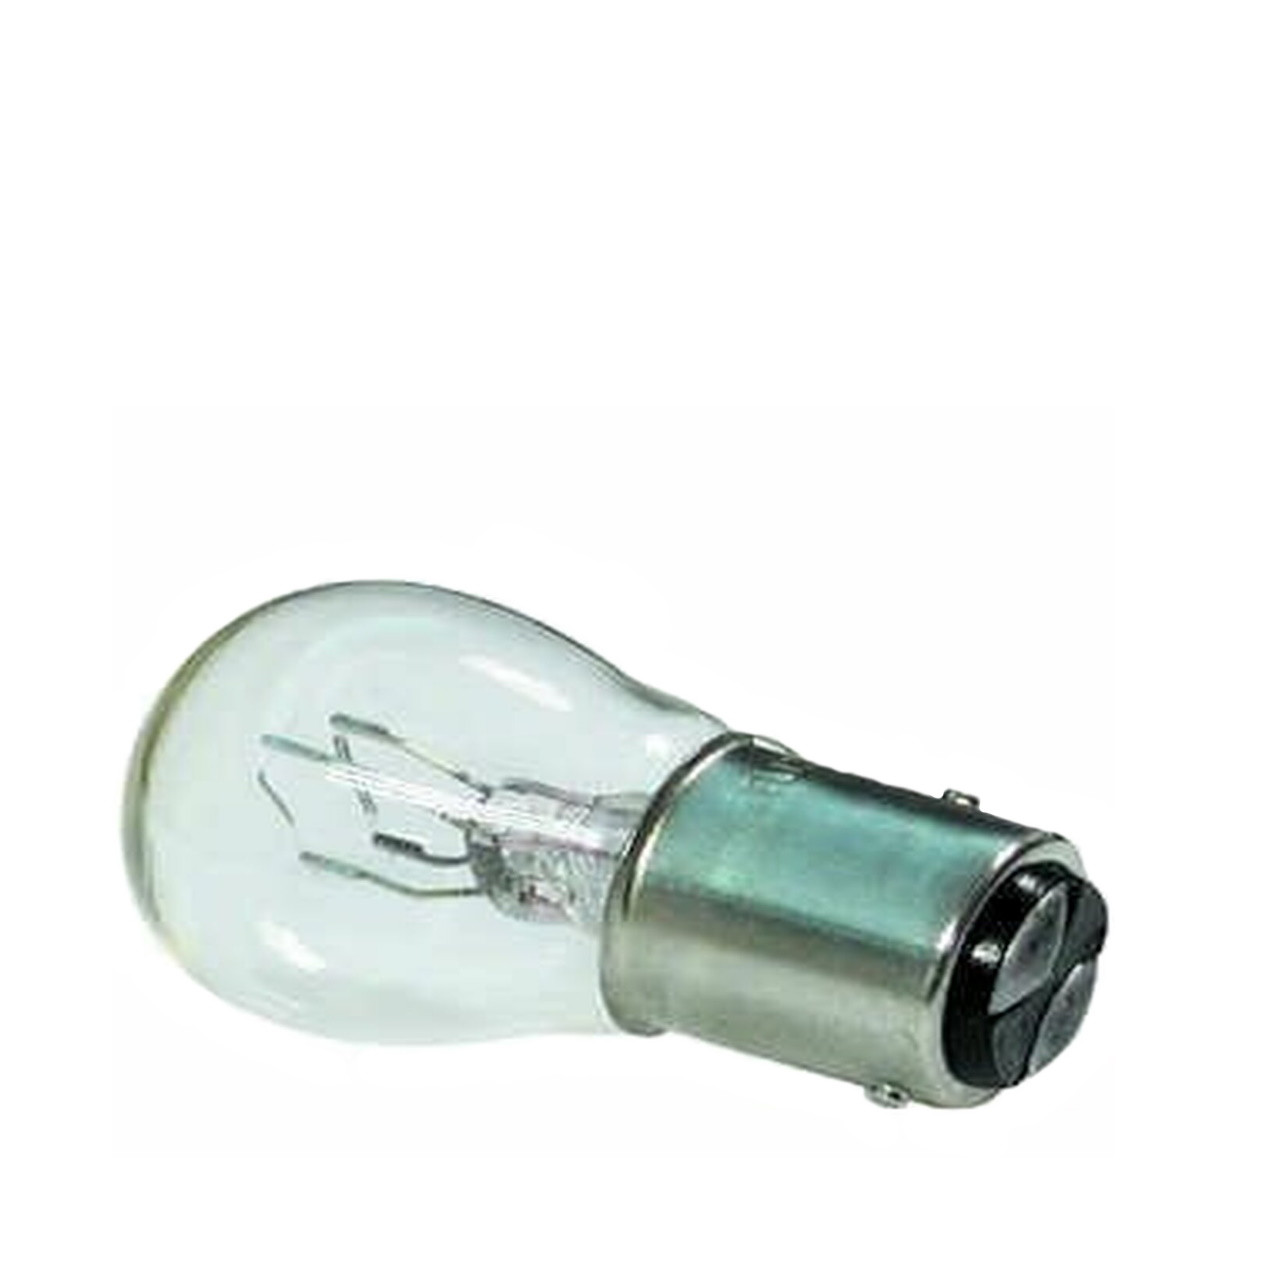 1157 Bulb 12 Volt 25/5 Watt, Fits Many Headlights / Taillights